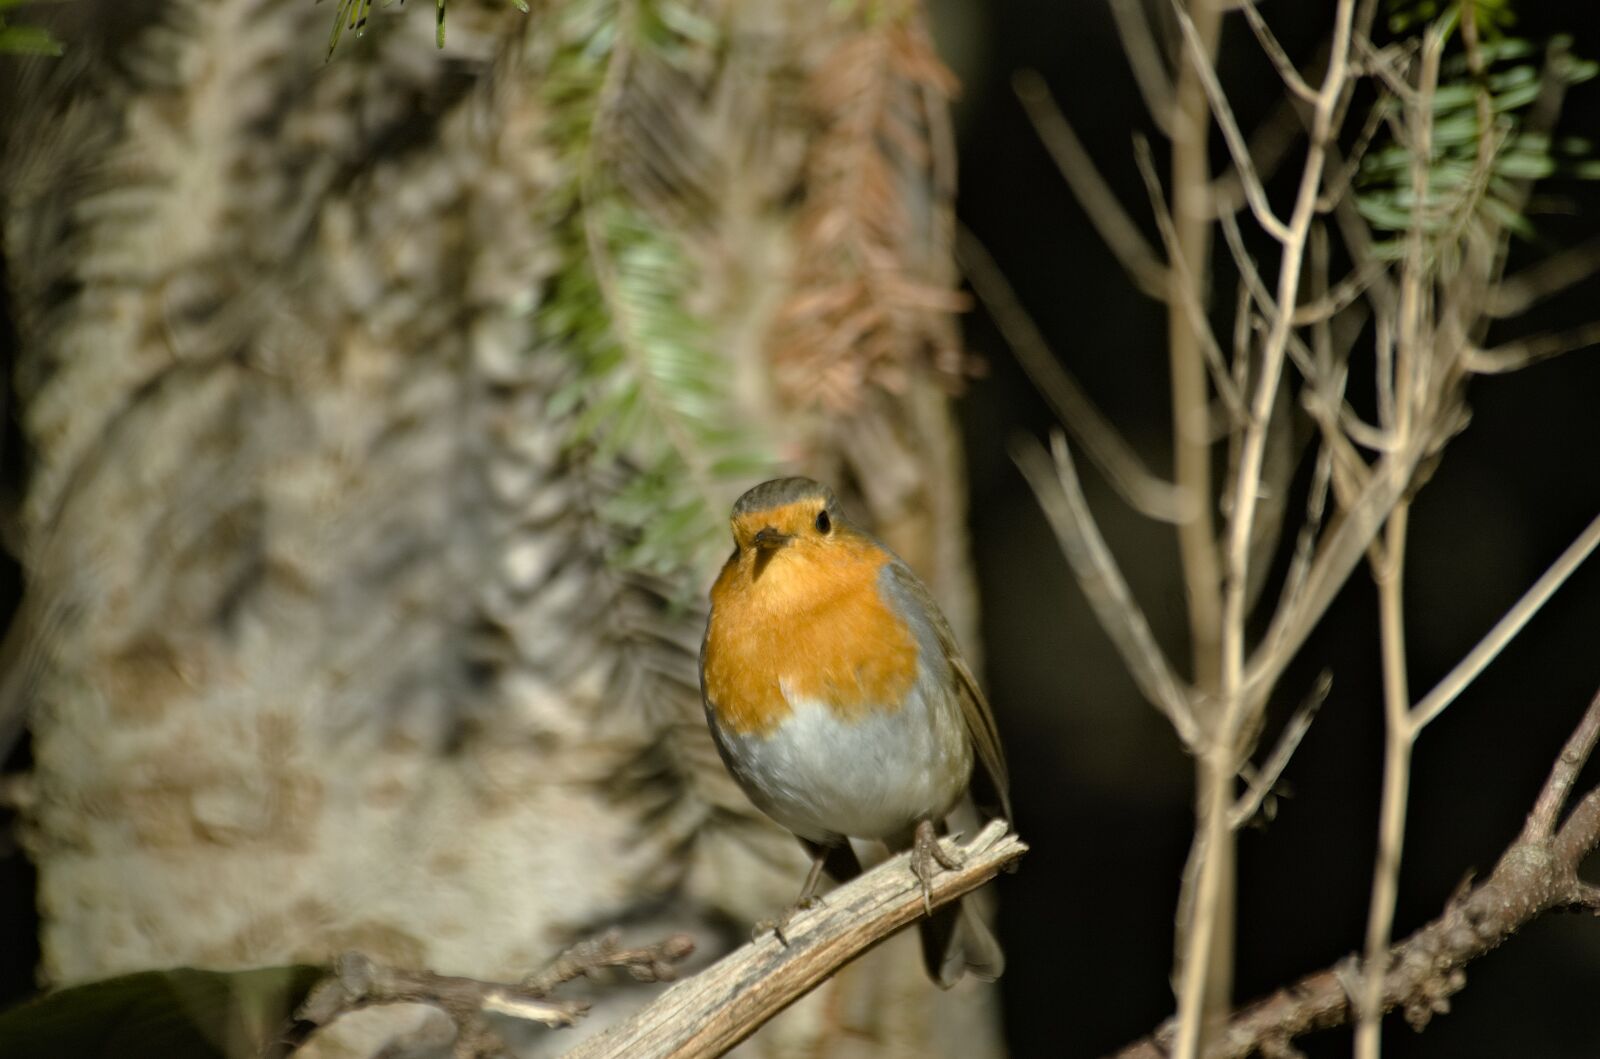 Nikon D70 sample photo. Robin, bird, songbird photography